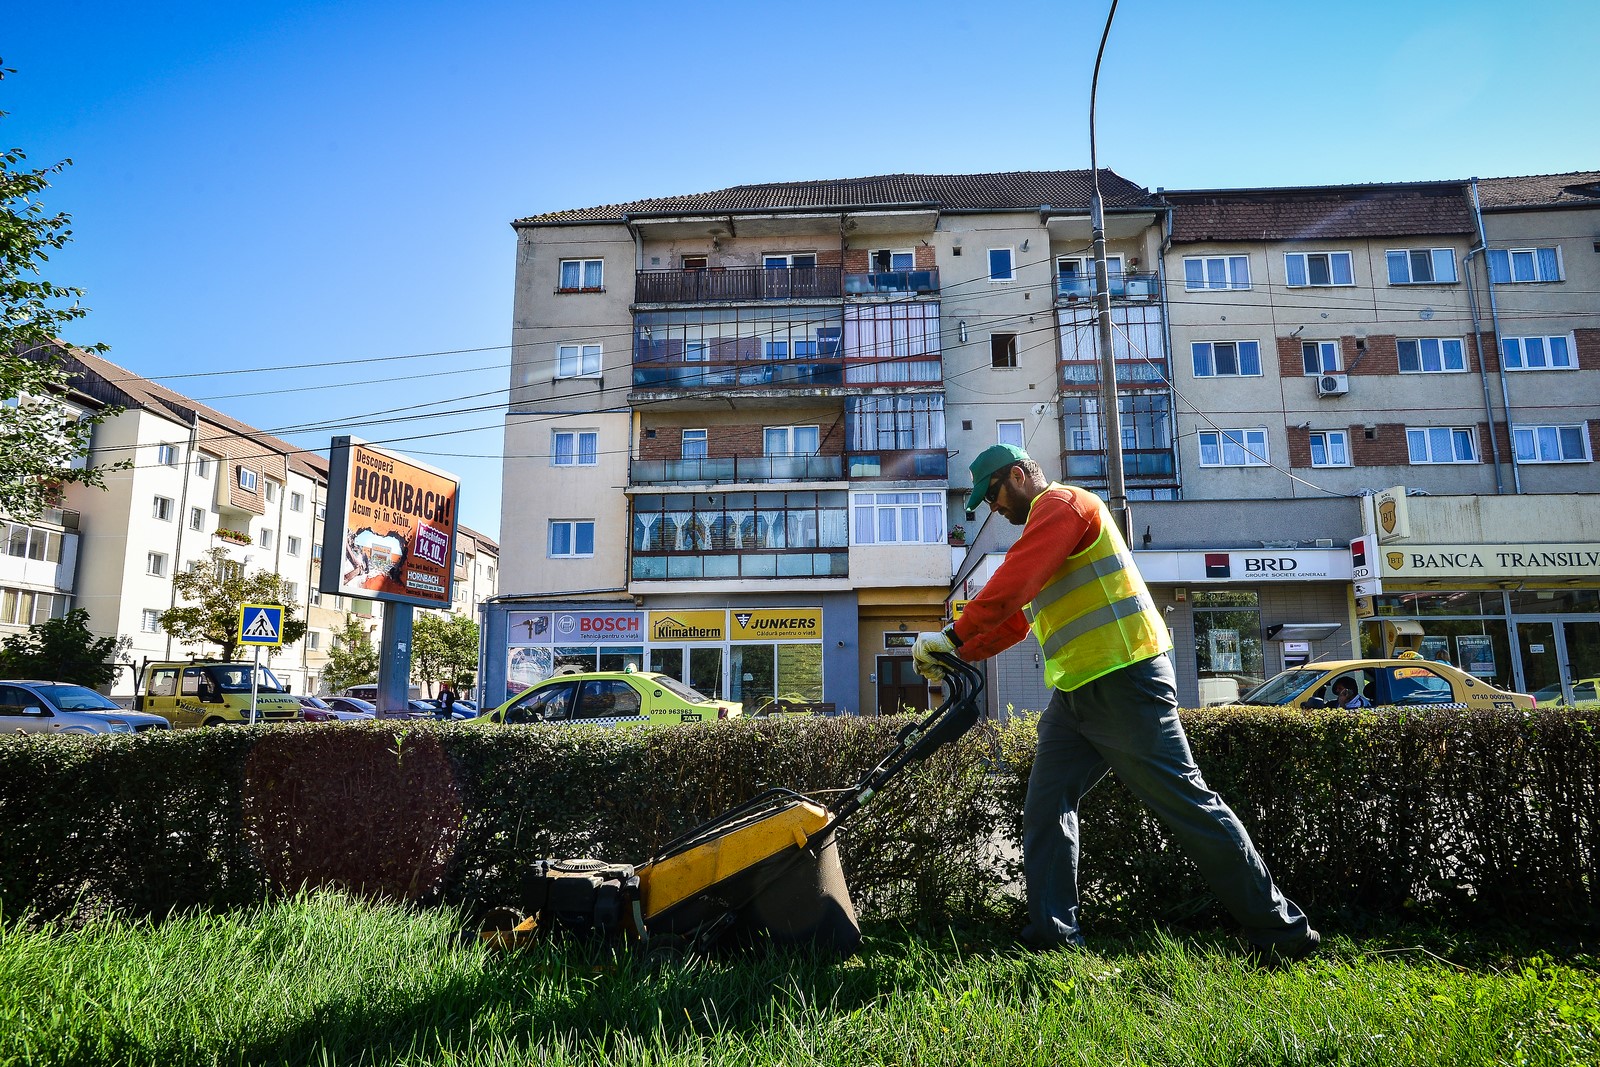 Curățenie și deszăpezire: patru grupuri de companii își doresc cel mai mare contract al Sibiului